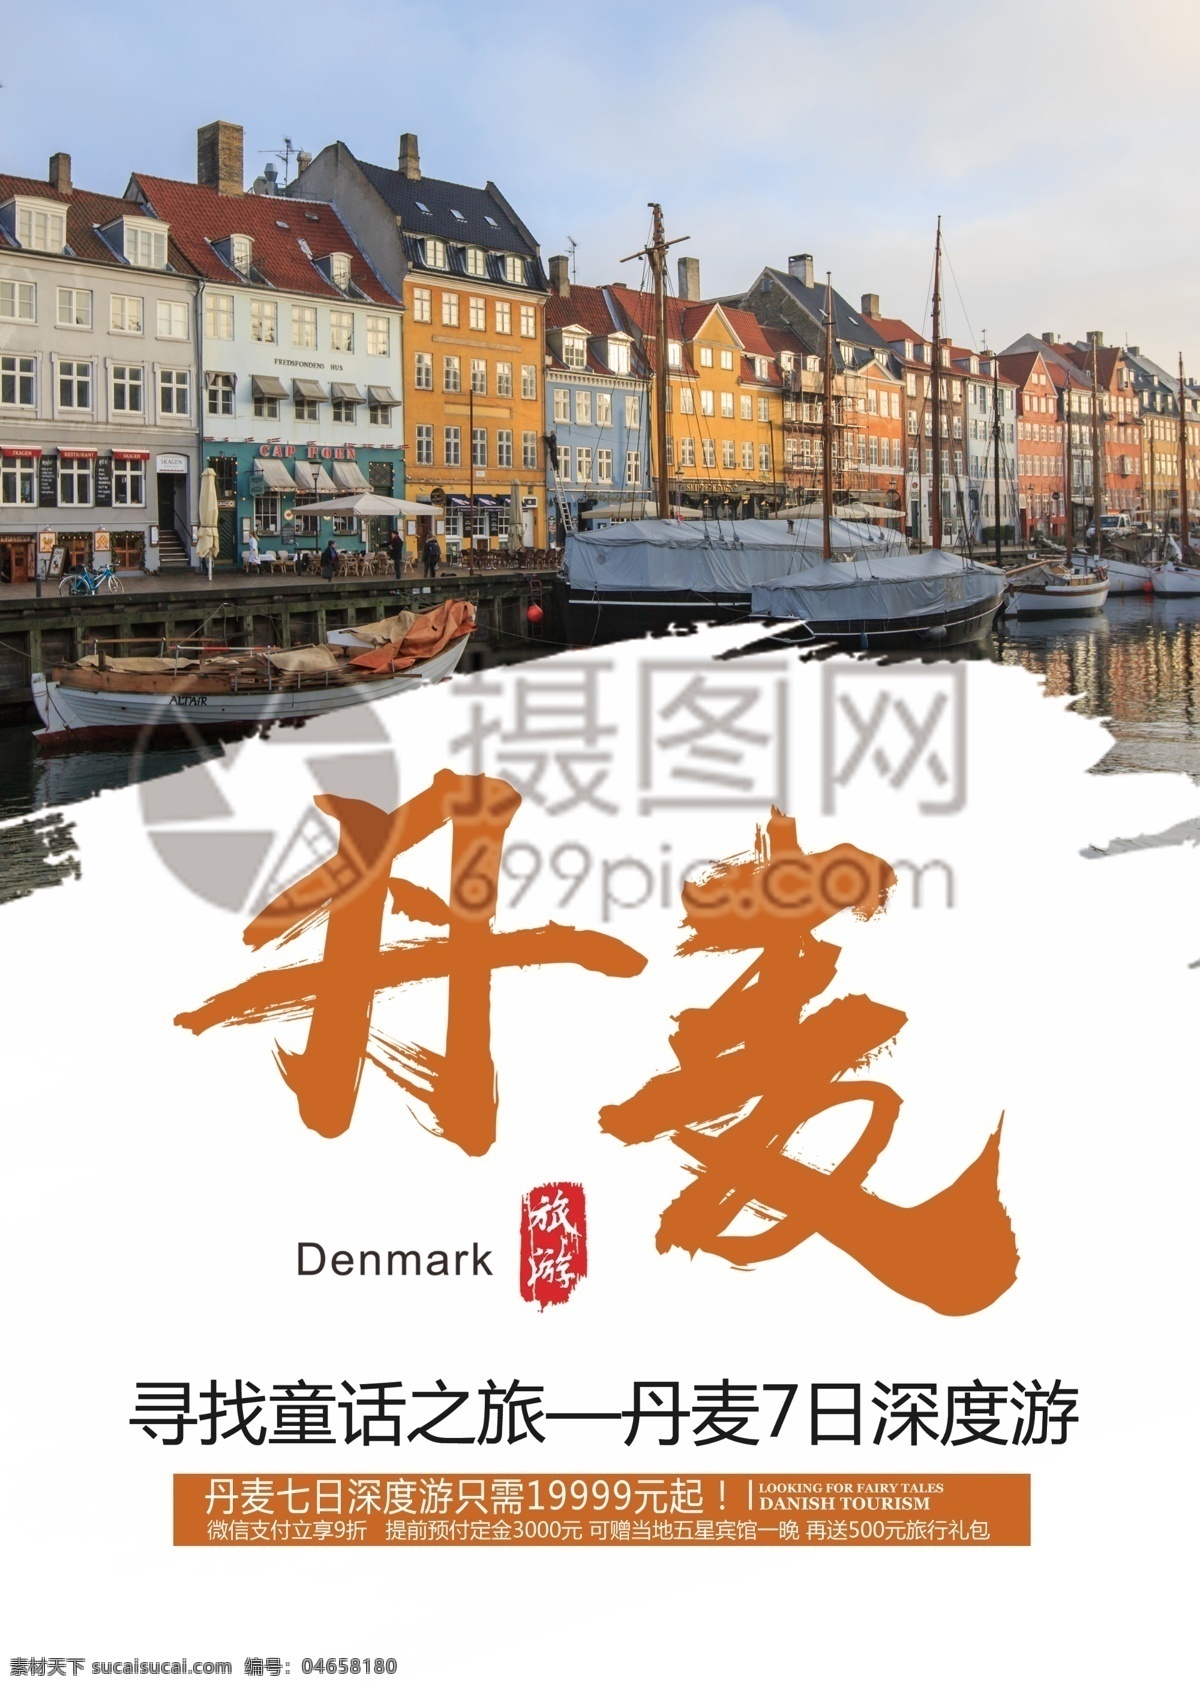 丹麦 旅游 宣传单 童话 彩色 小镇 哥本哈根 出境游 旅行 国际游 跟团游 旅行社 旅游路线 风景 风光 景色